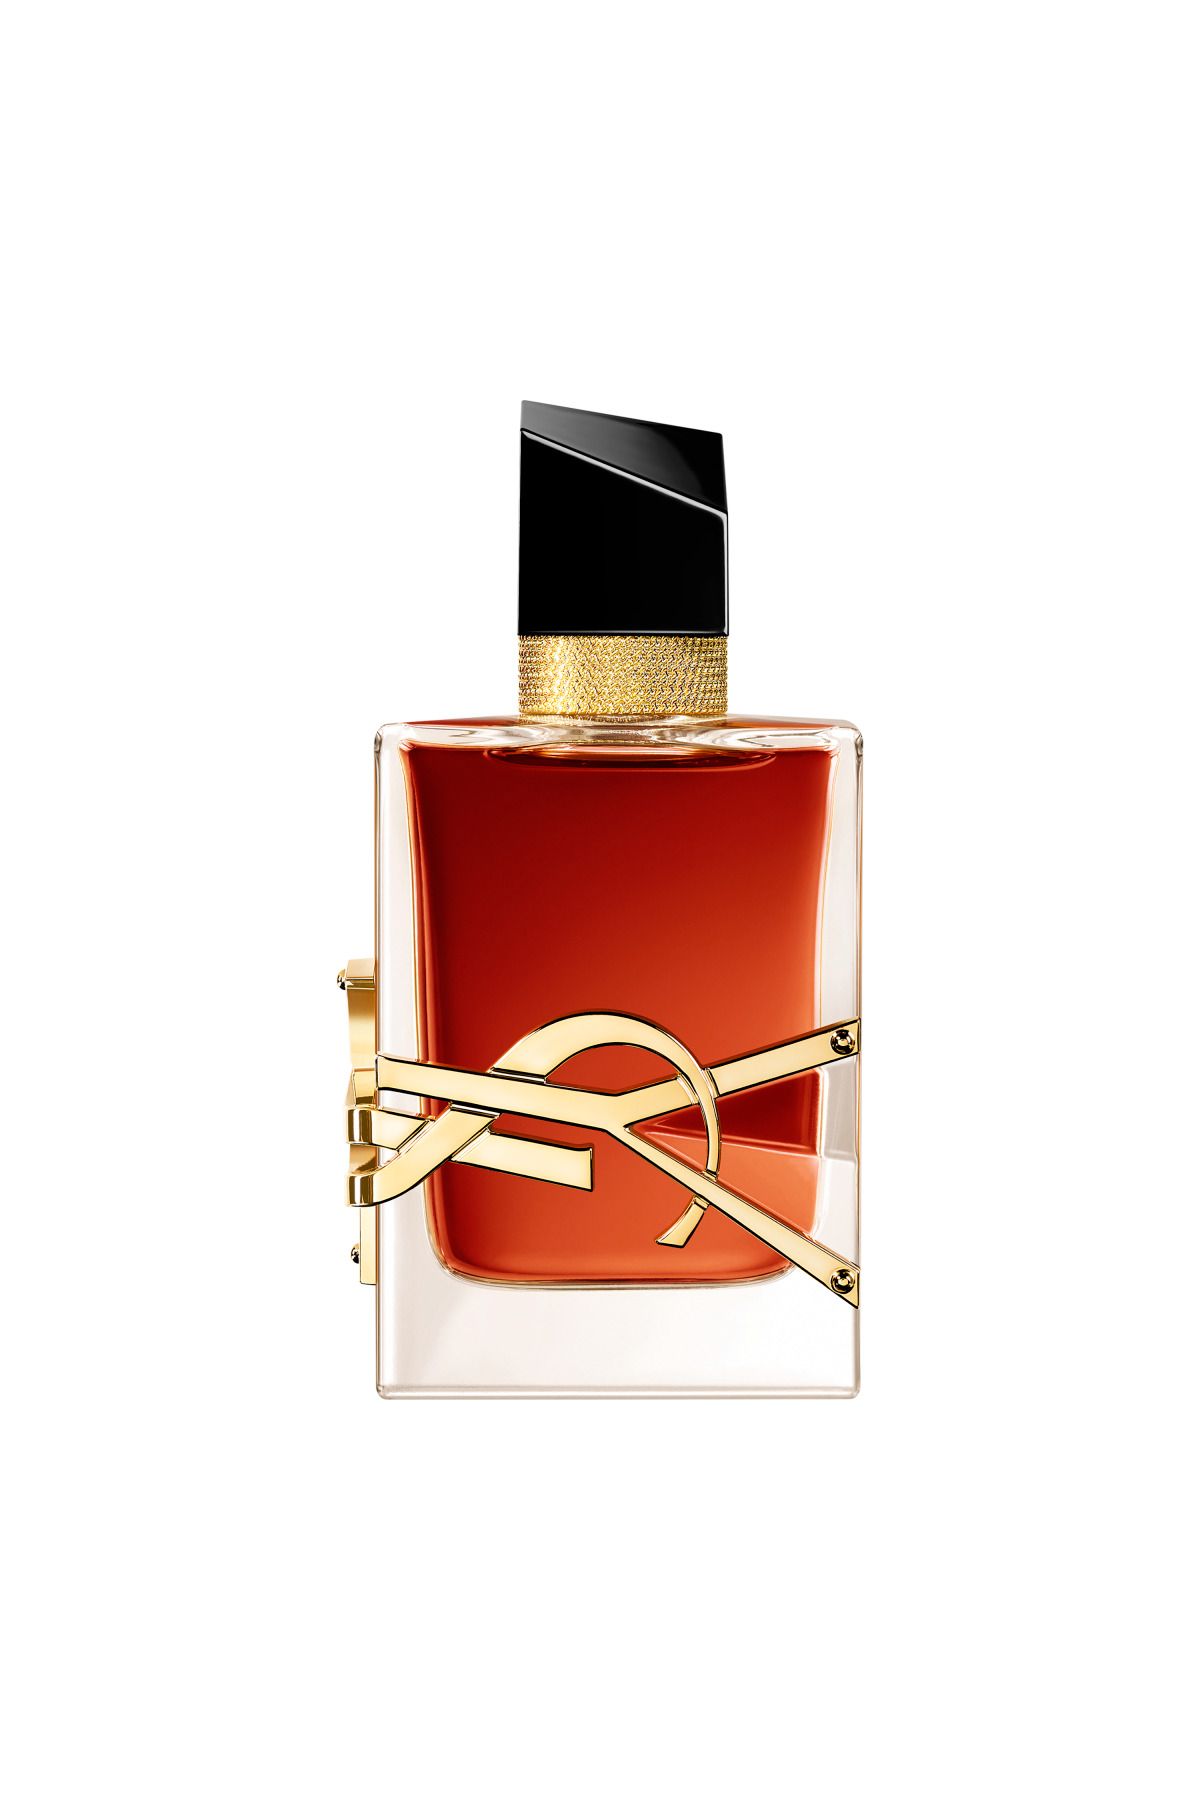 Yves Saint Laurent Libre Le Parfum 50 ml Kadın Parfüm 3614273776110